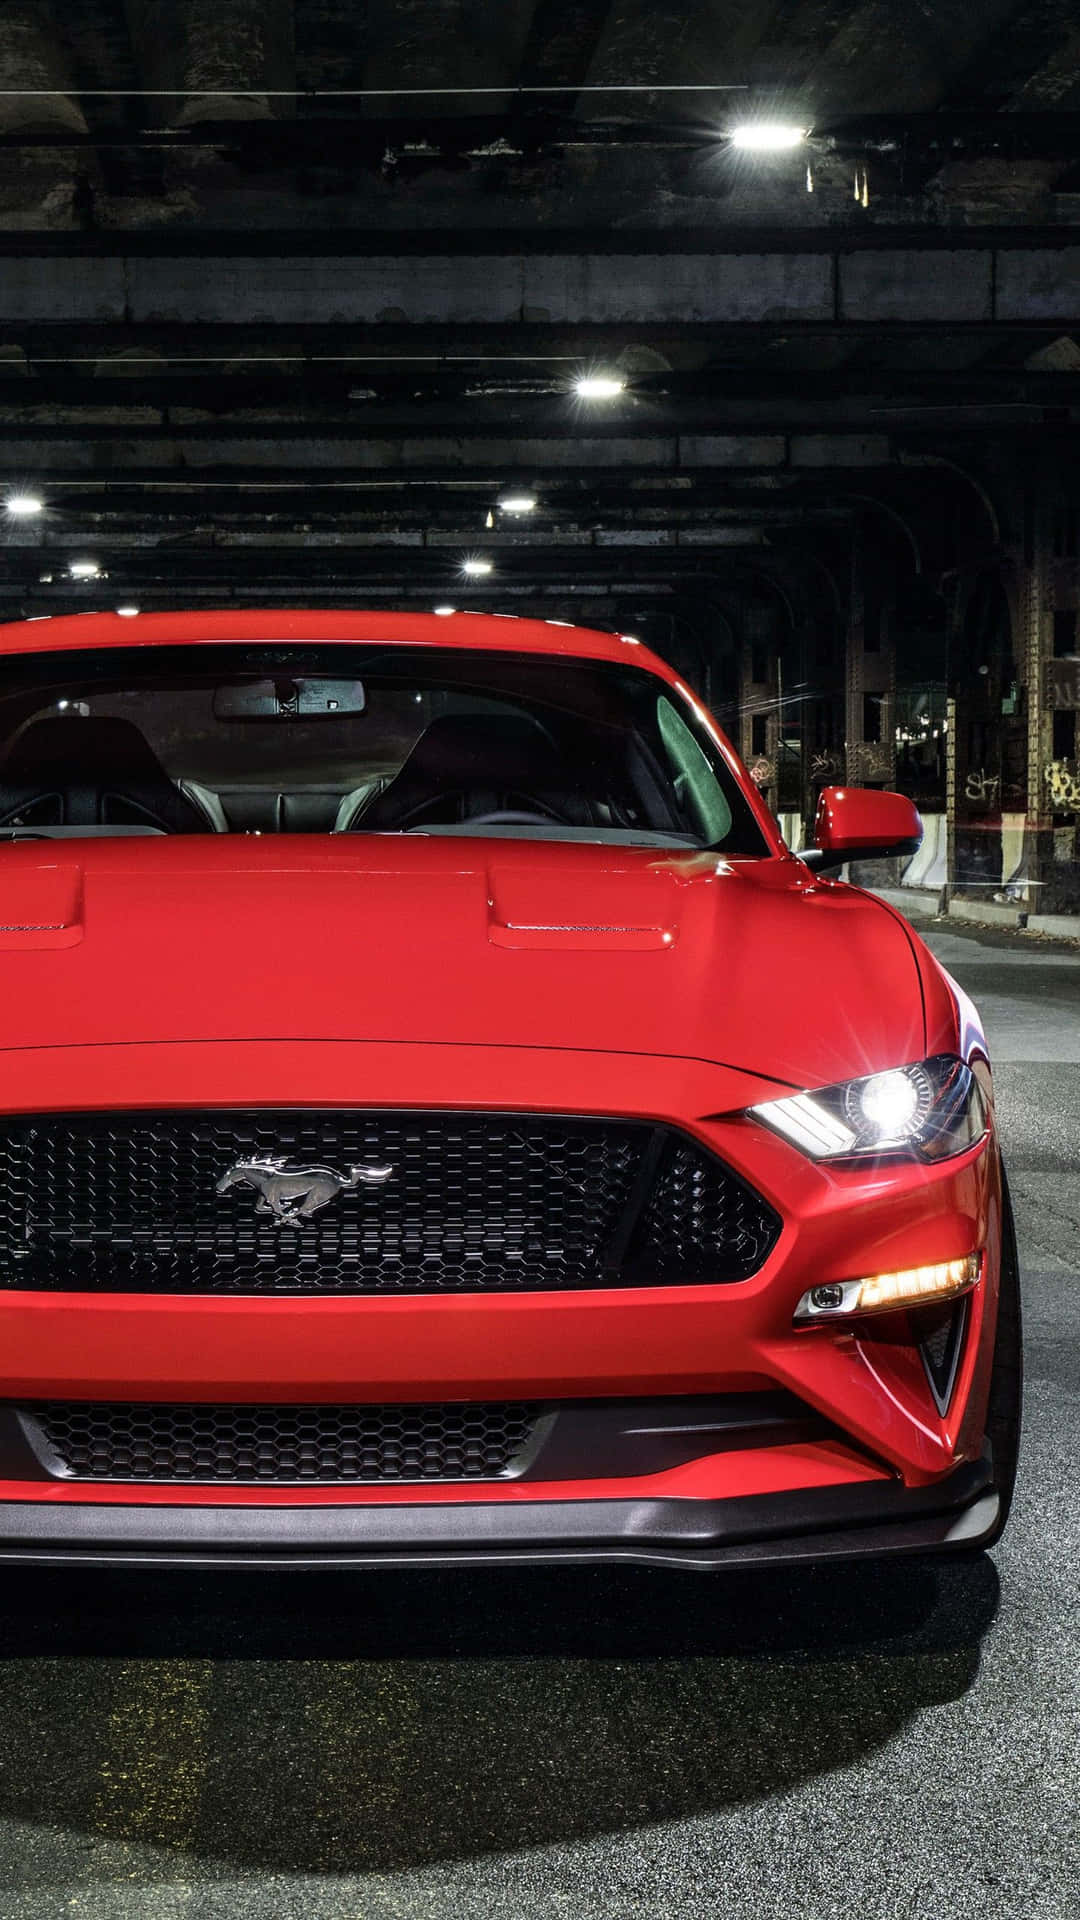 Den røde 2019 Ford Mustang GT er parkeret i et garage Wallpaper